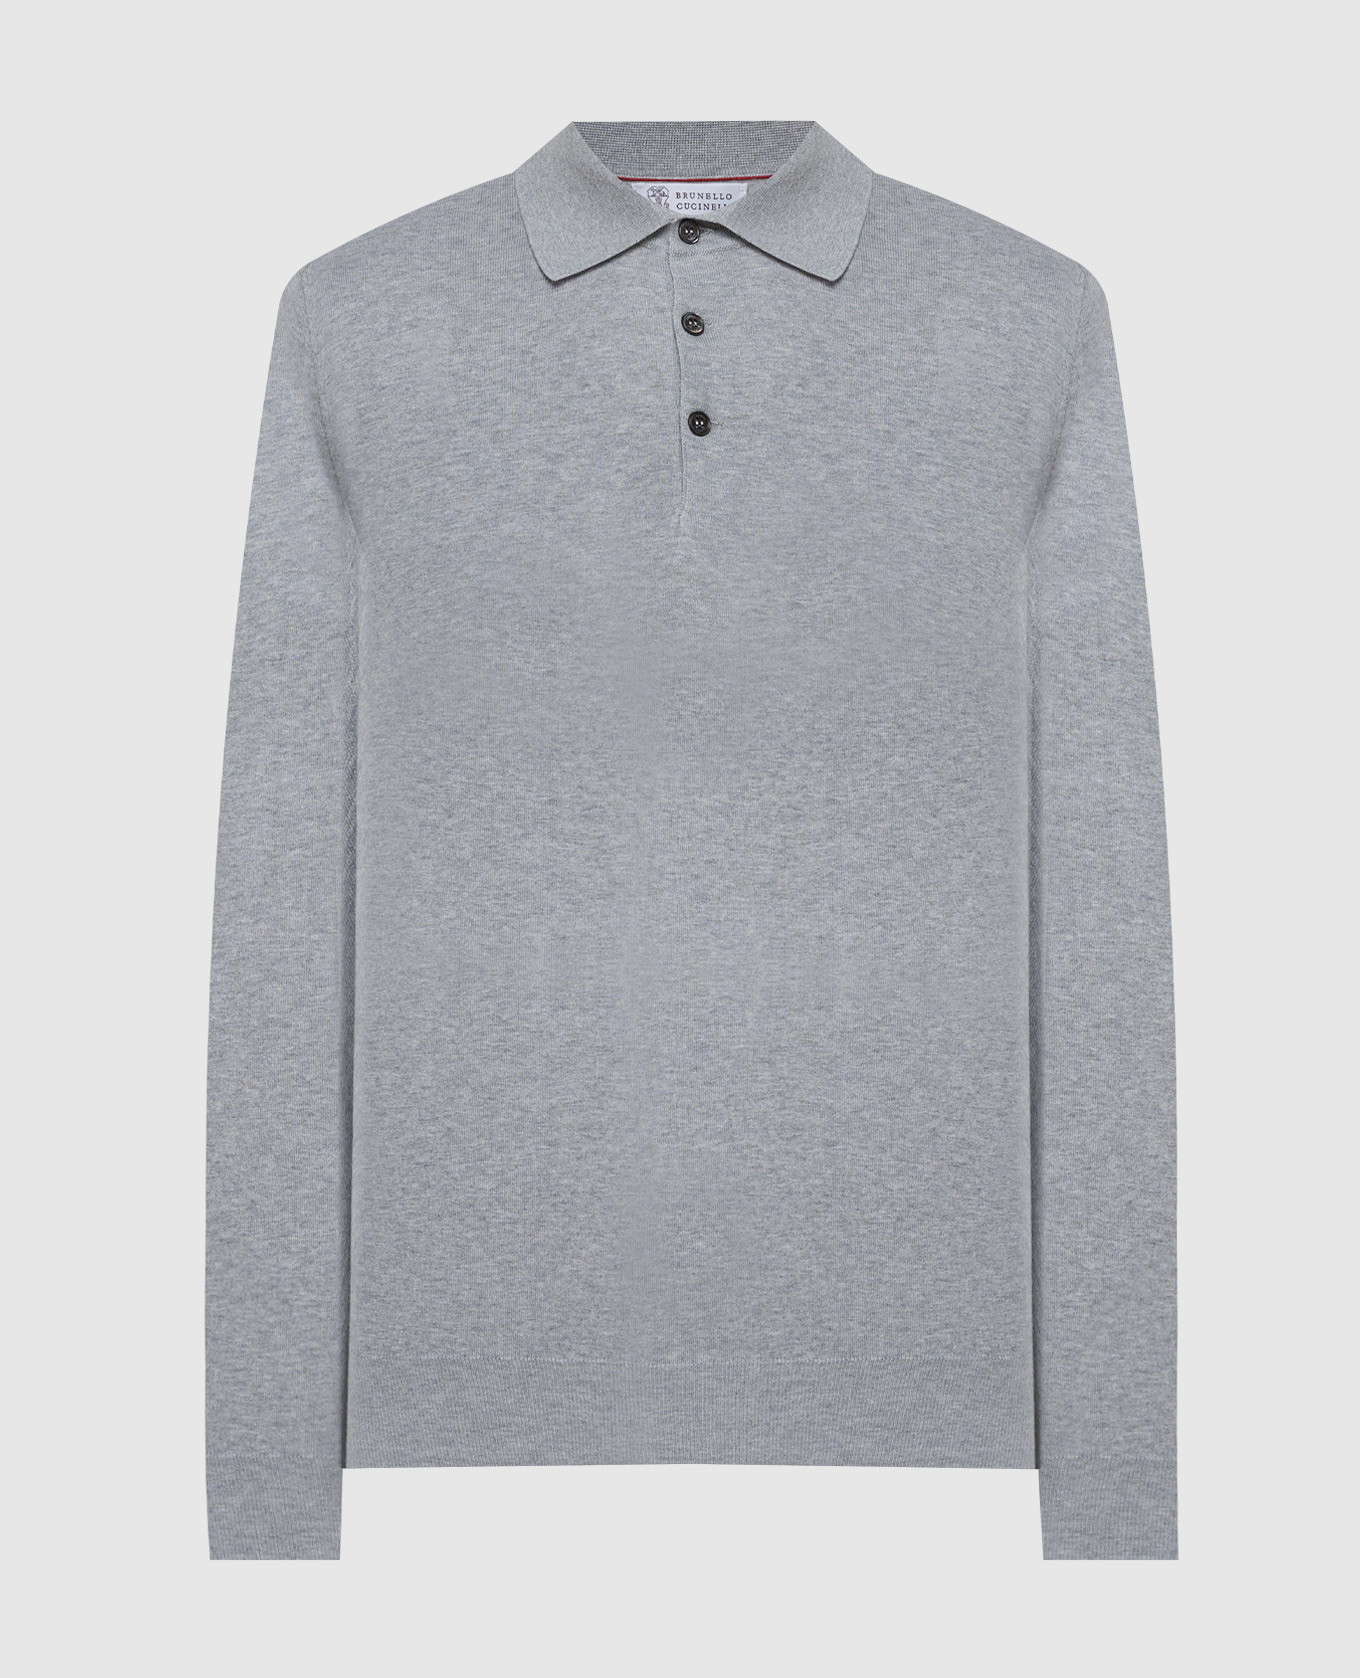 Gray polo shirt